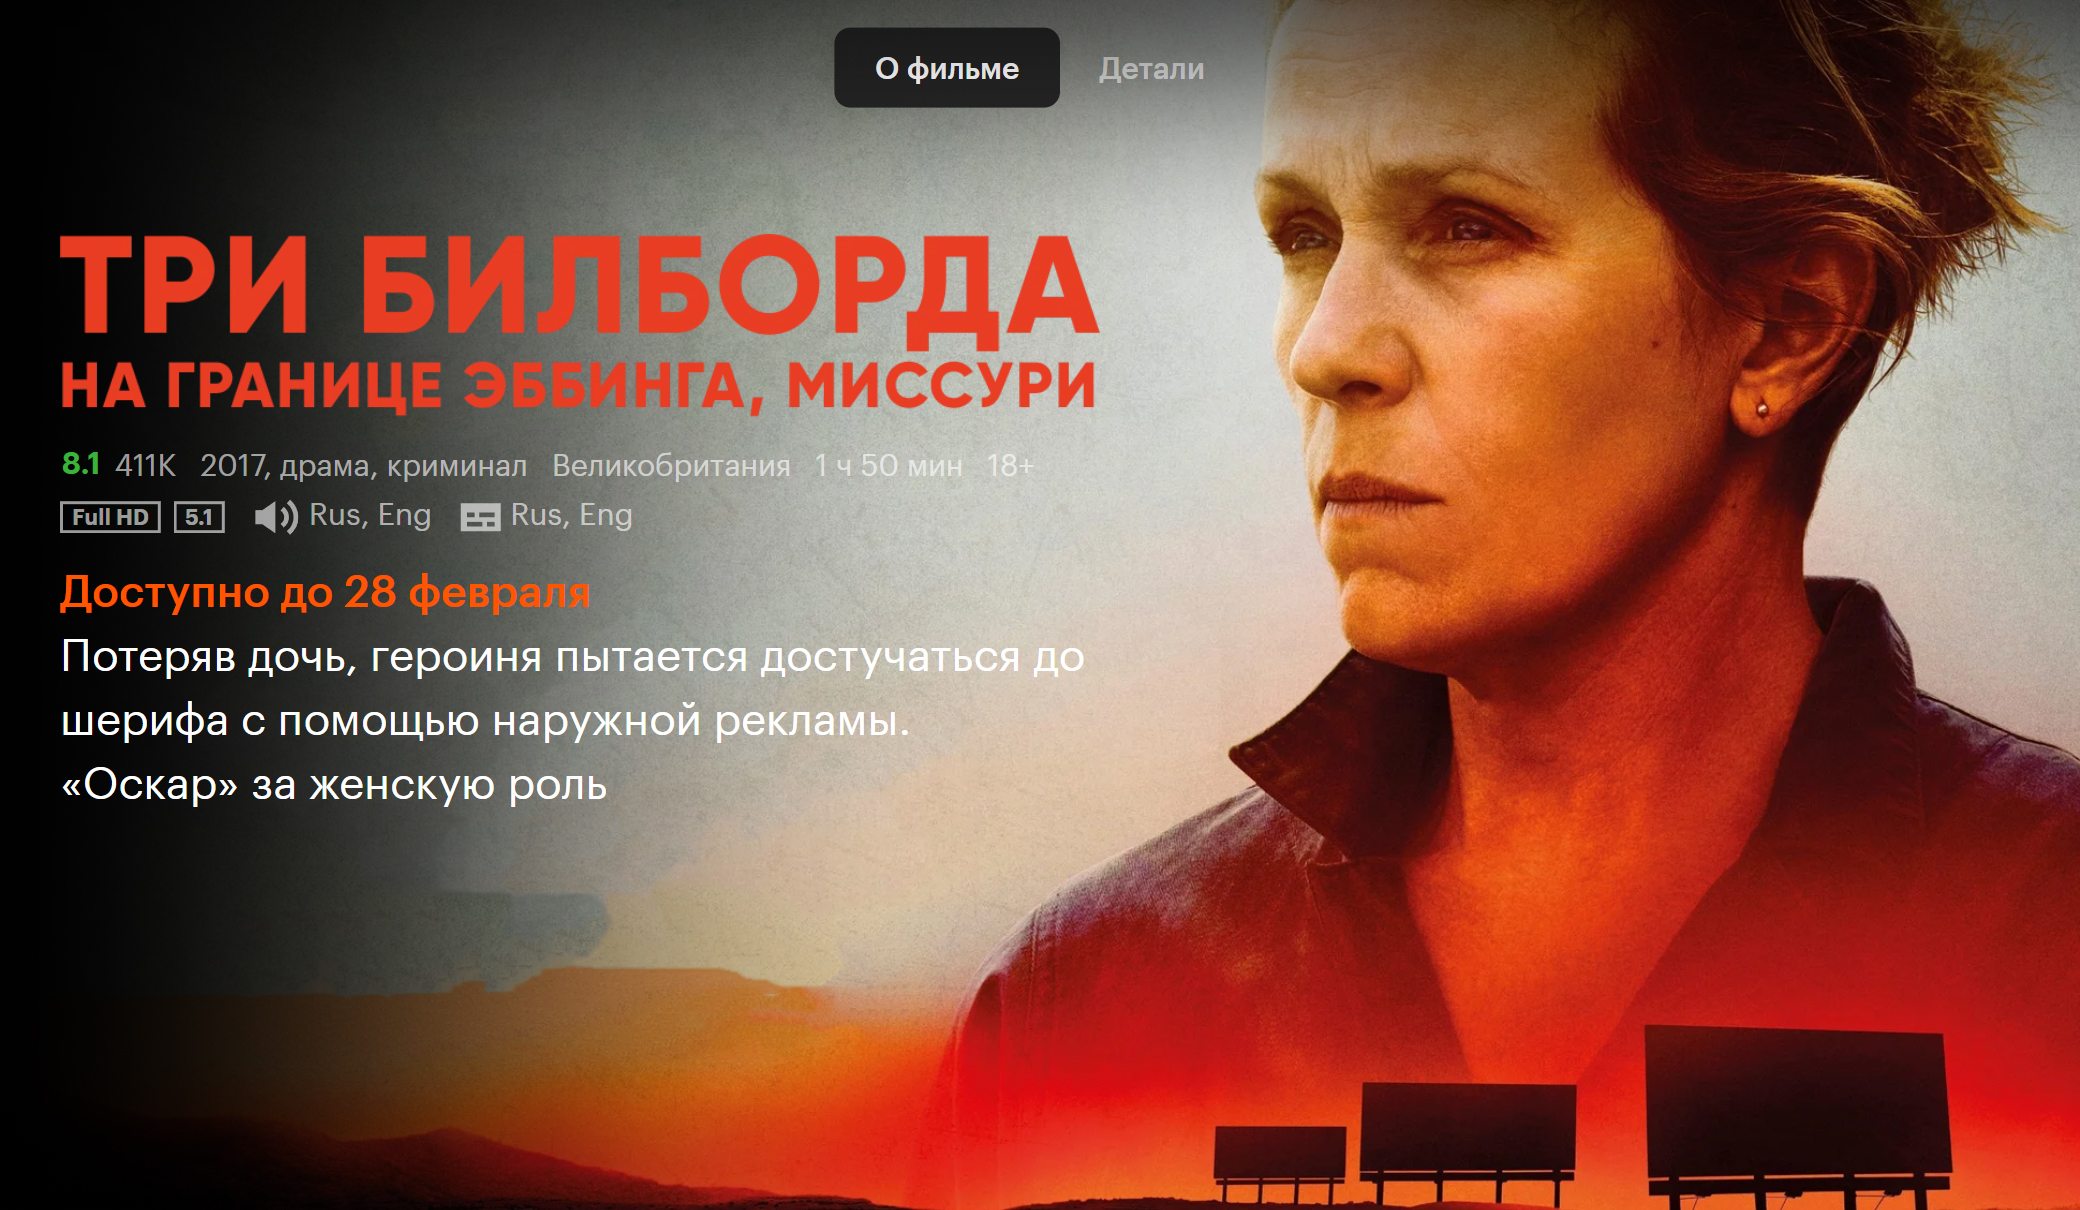 Пример такого предупреждения: фильм «Три билборда на границе Эббинга, Миссури» доступен только до 28 февраля. Источник: kinopoisk.ru